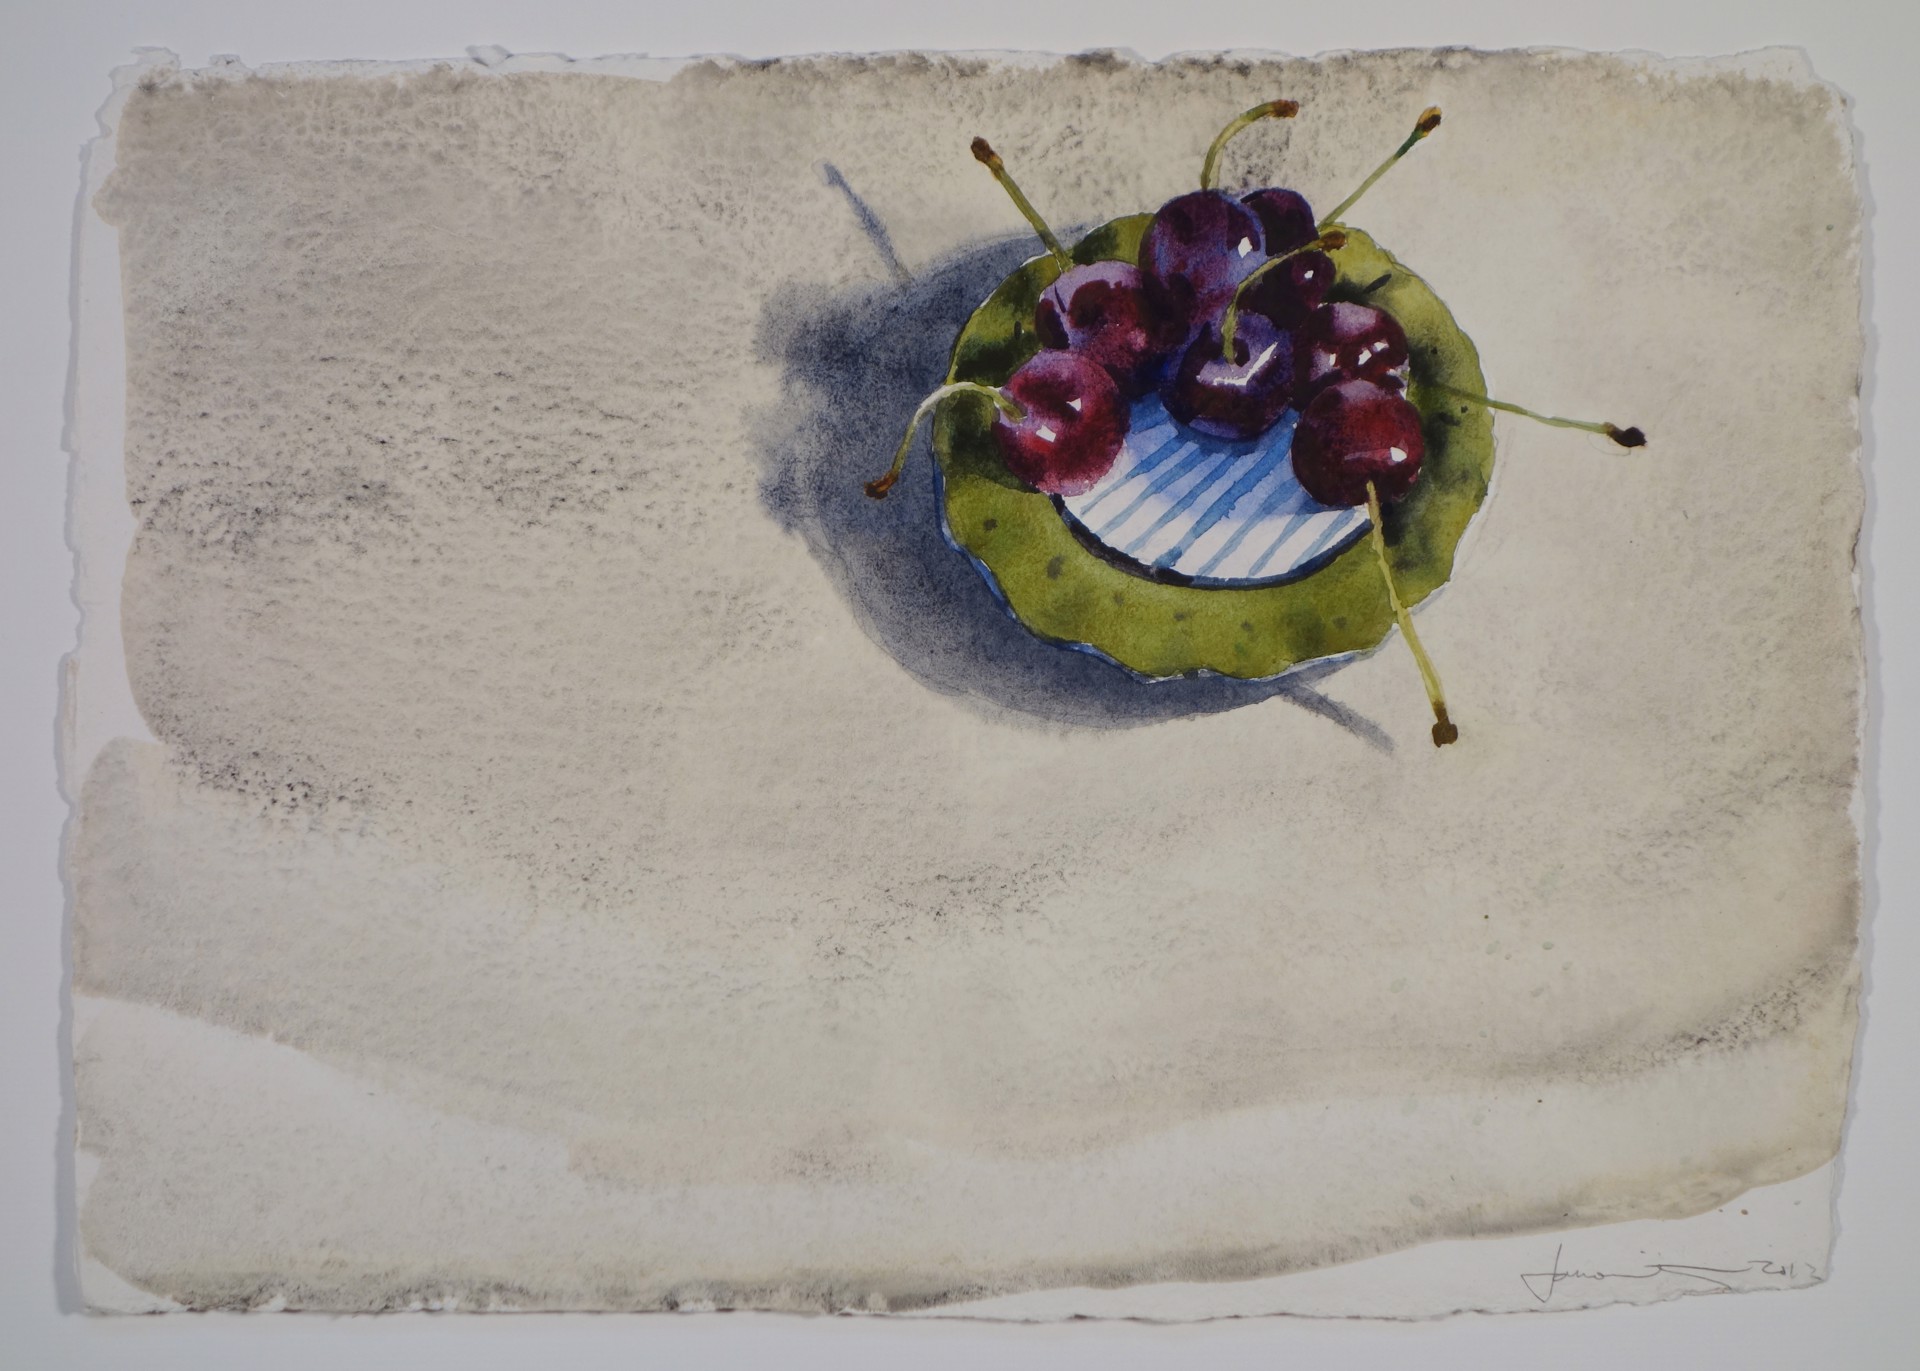 Cherries on Sophia’s Plate by Joel Janowitz